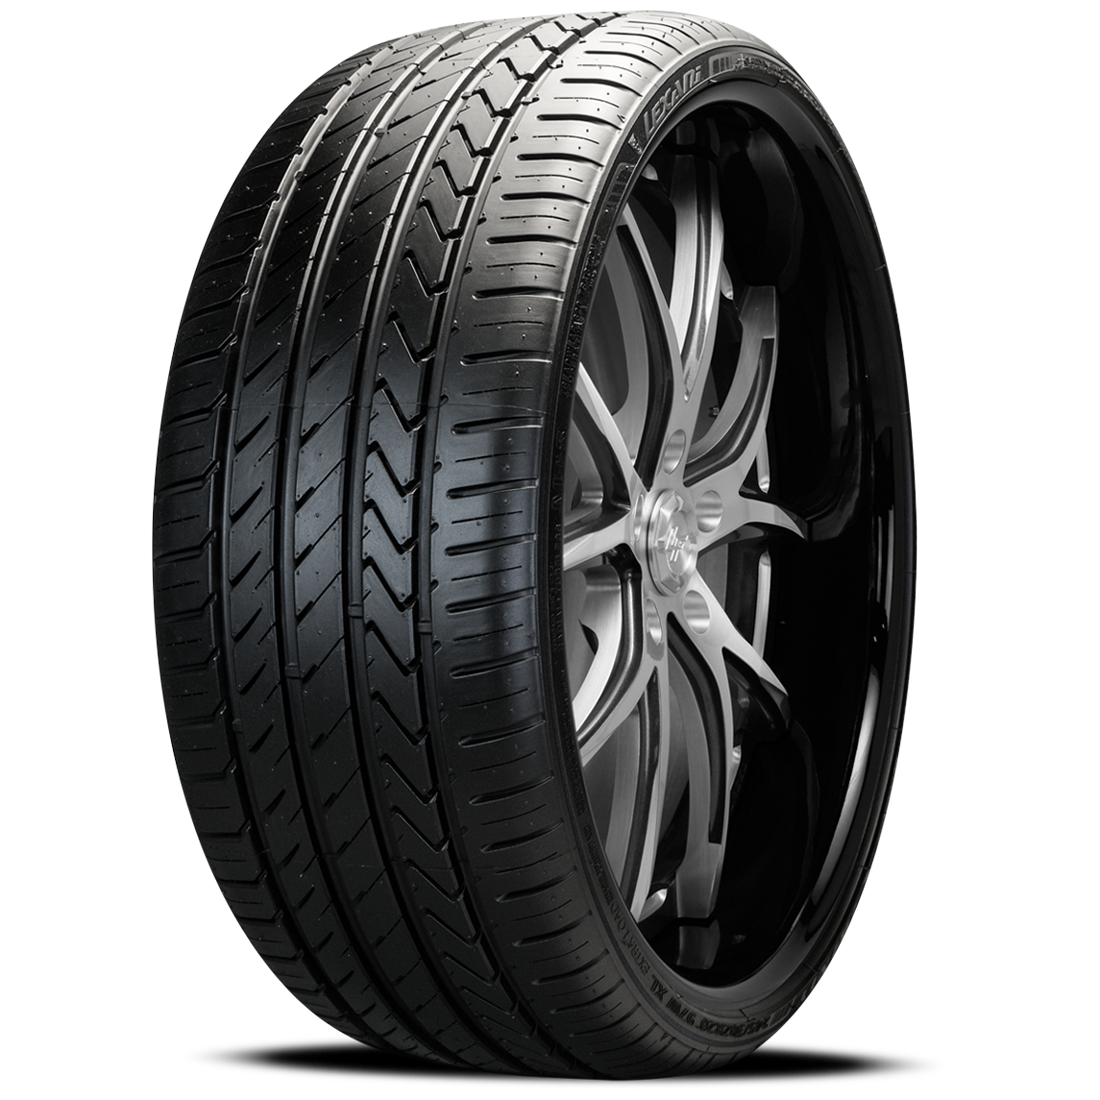 LEXANI LX-TWENTY 255/30R20 (26.1X10.2R 20) Tires